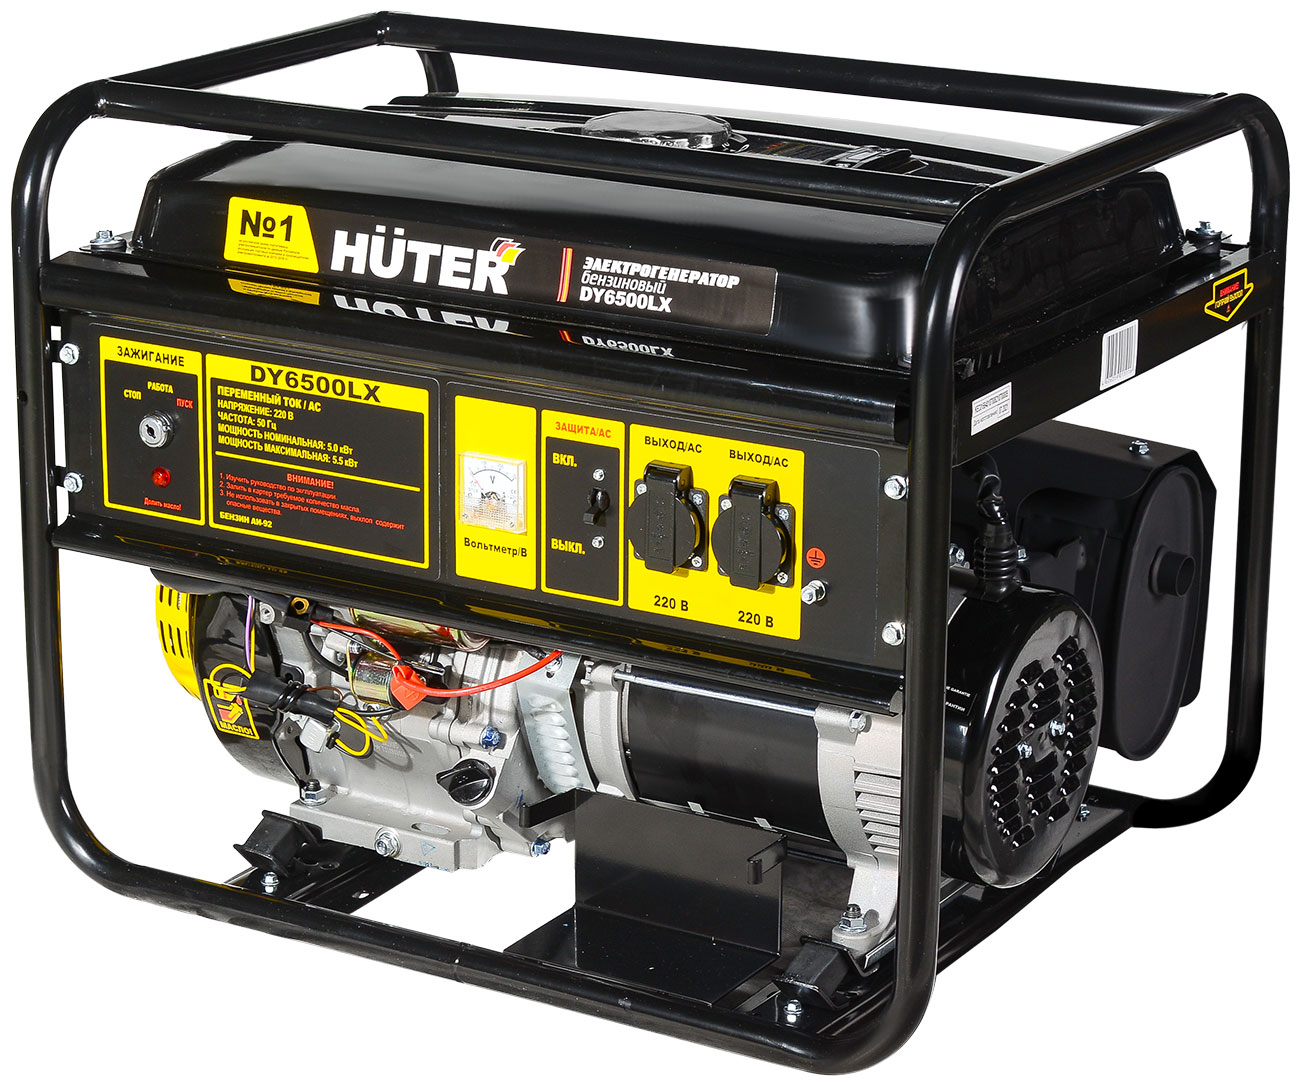 Электрический генератор и электростанция Huter DY6500LX- электростартер цена и фото